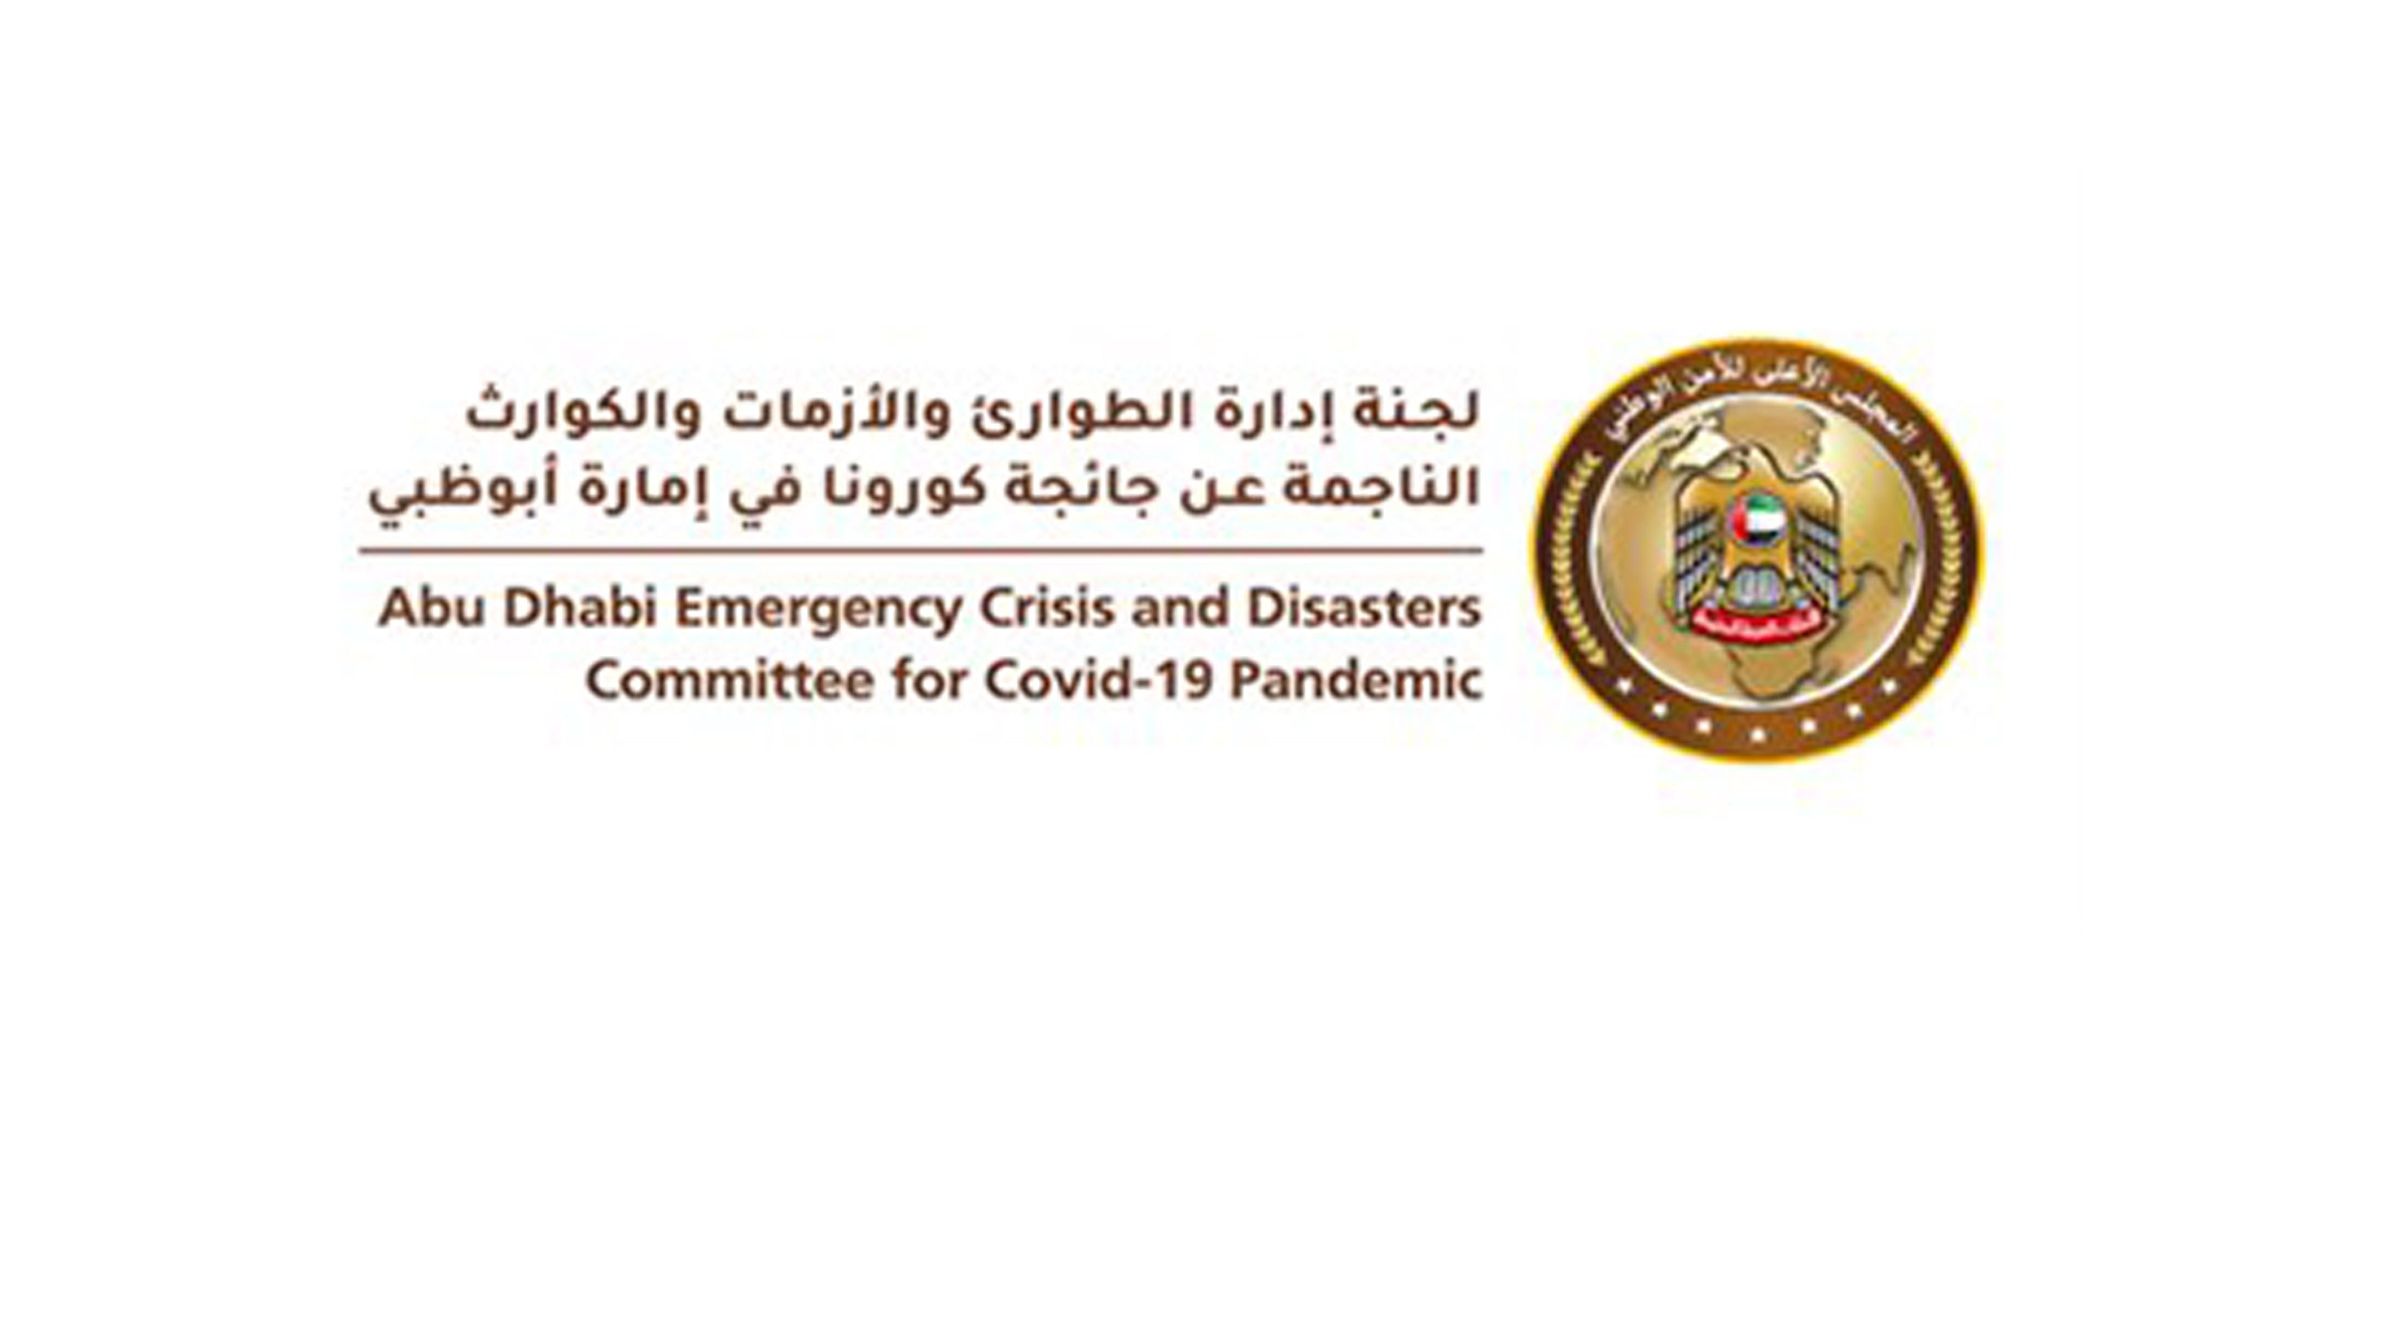 لجنة إدارة الطوارئ والأزمات ترفع الطاقة الاستيعابية للأنشطة الاقتصادية في إمارة أبوظبي